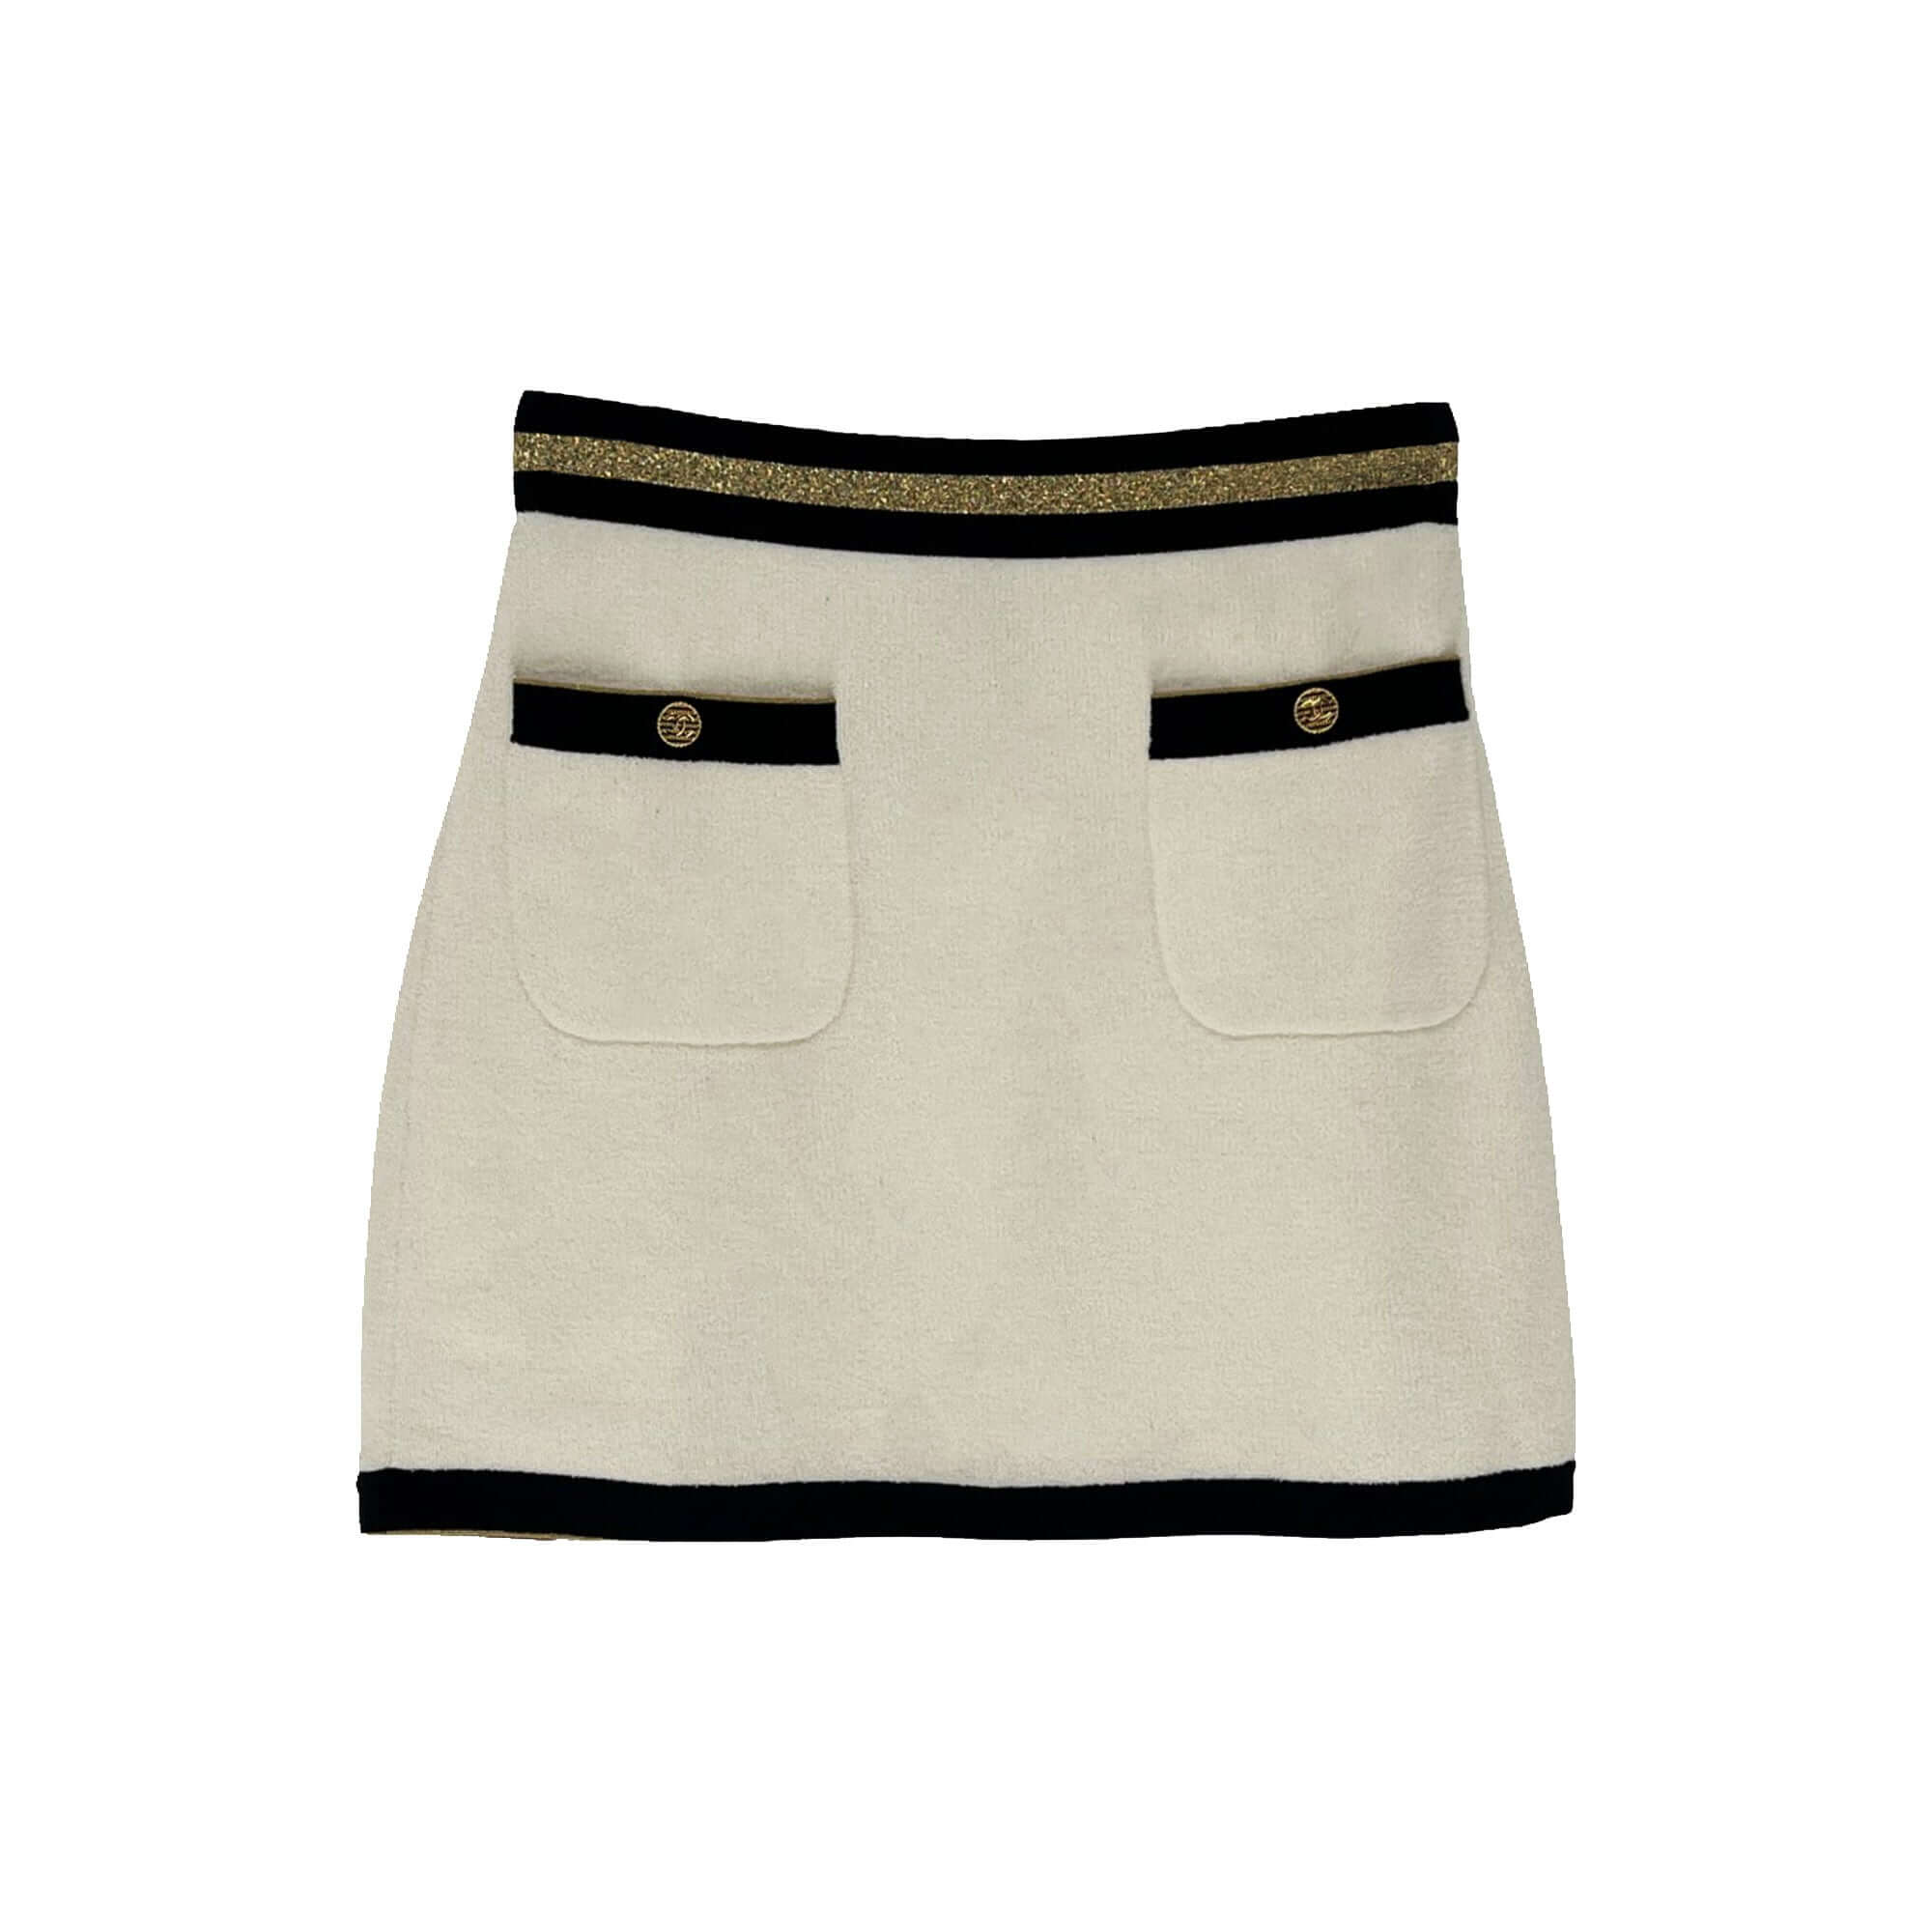 Chanel mini skirt